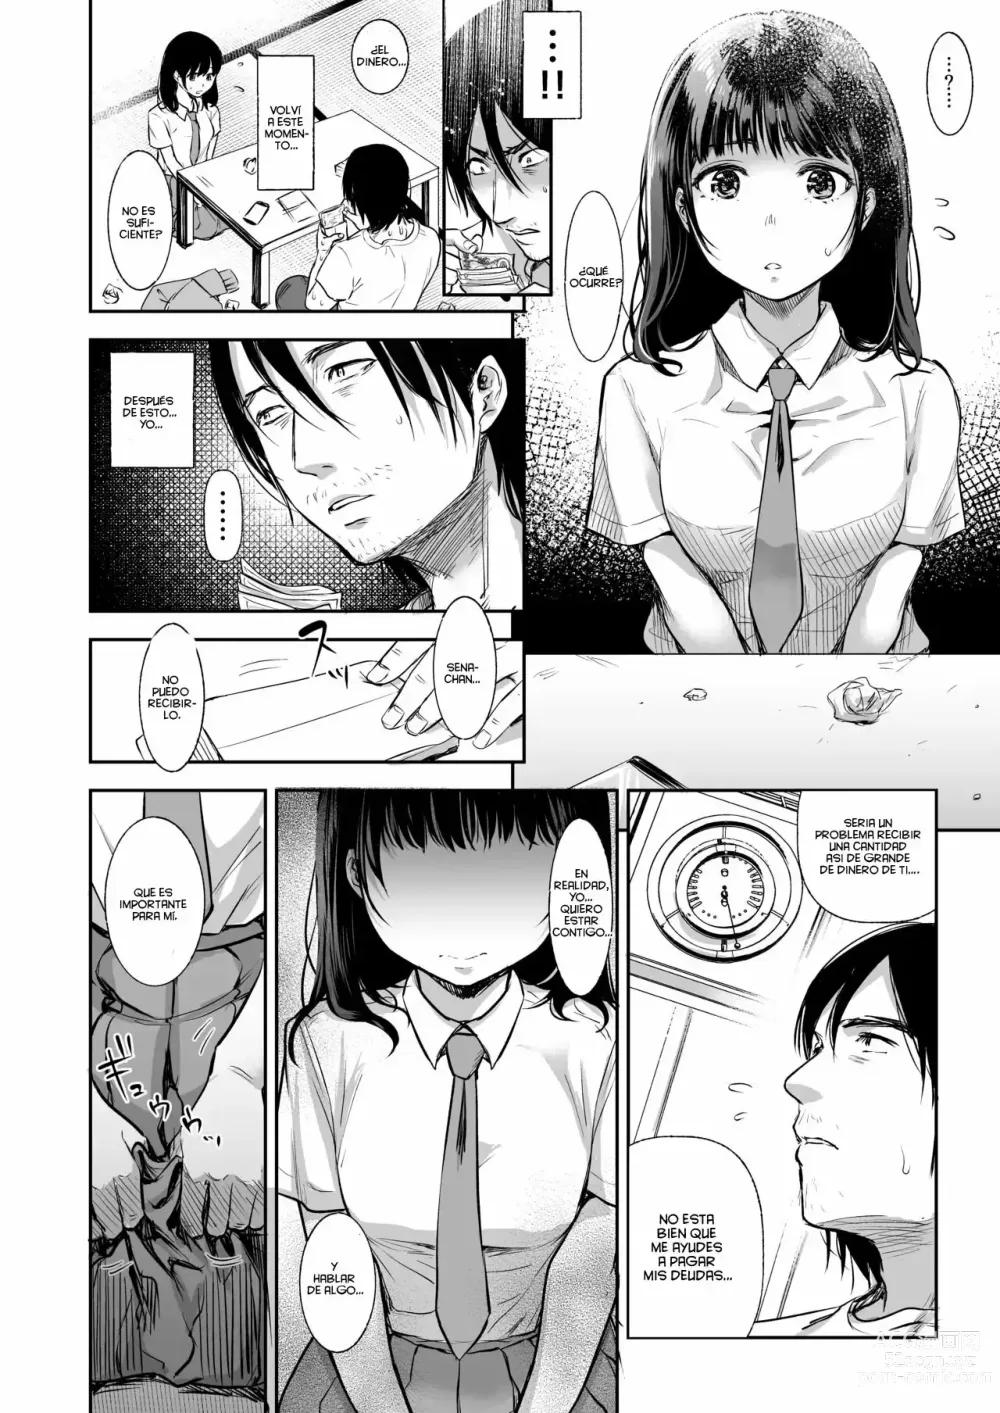 Page 86 of manga TABOO (Yarisugi Shoujo no Kowashikata.) Ch. 1-3 + What If...?